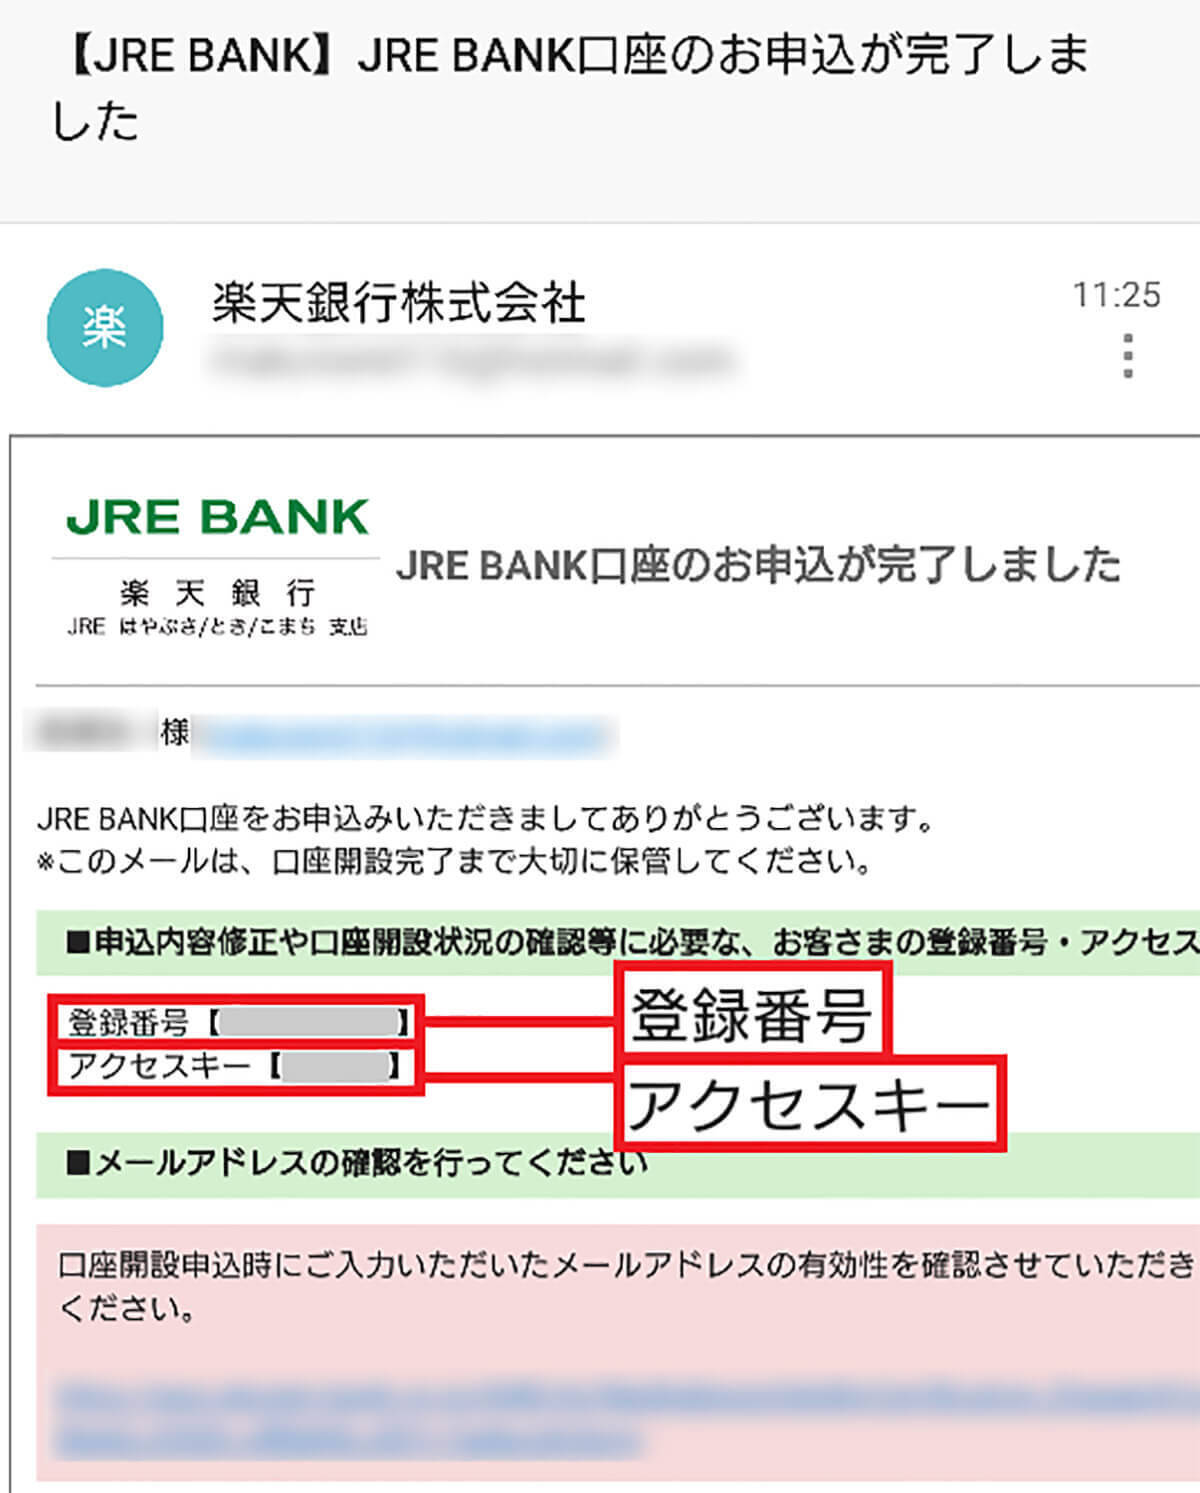 JR東日本の「JRE BANK」口座を実際に開いてみた！− 手順と注意点を解説